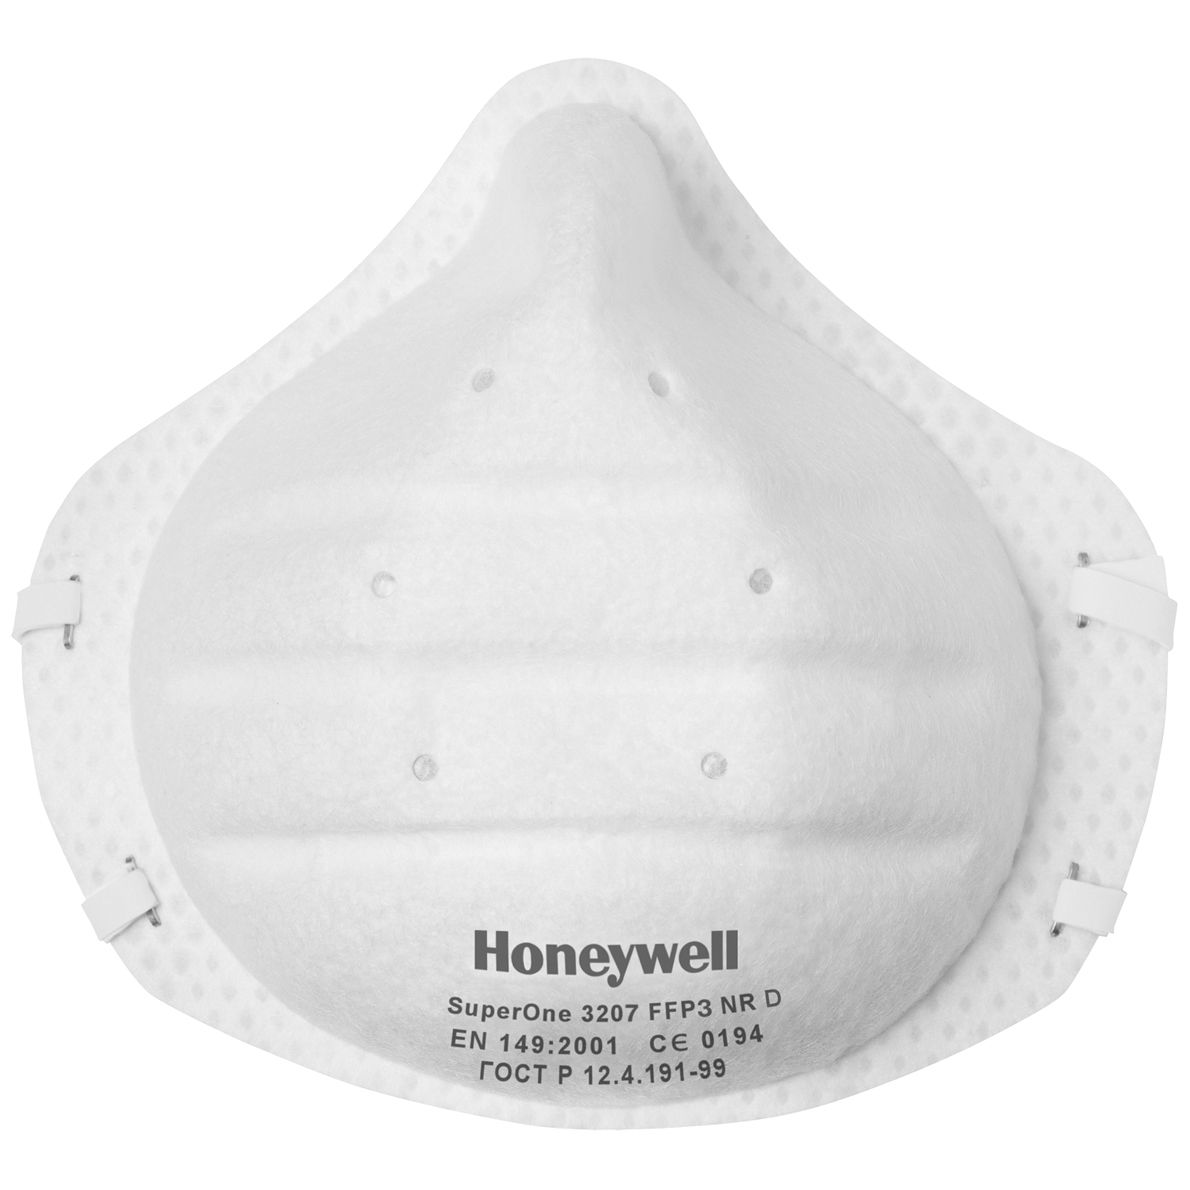 ANGEBOT: 30 Stück Honeywell SuperOne 3207 FFP3-Masken - Einweg-Staubschutzmaske ohne Ventil - EN 149 - Staubmaske gegen Asbest & Schimmel